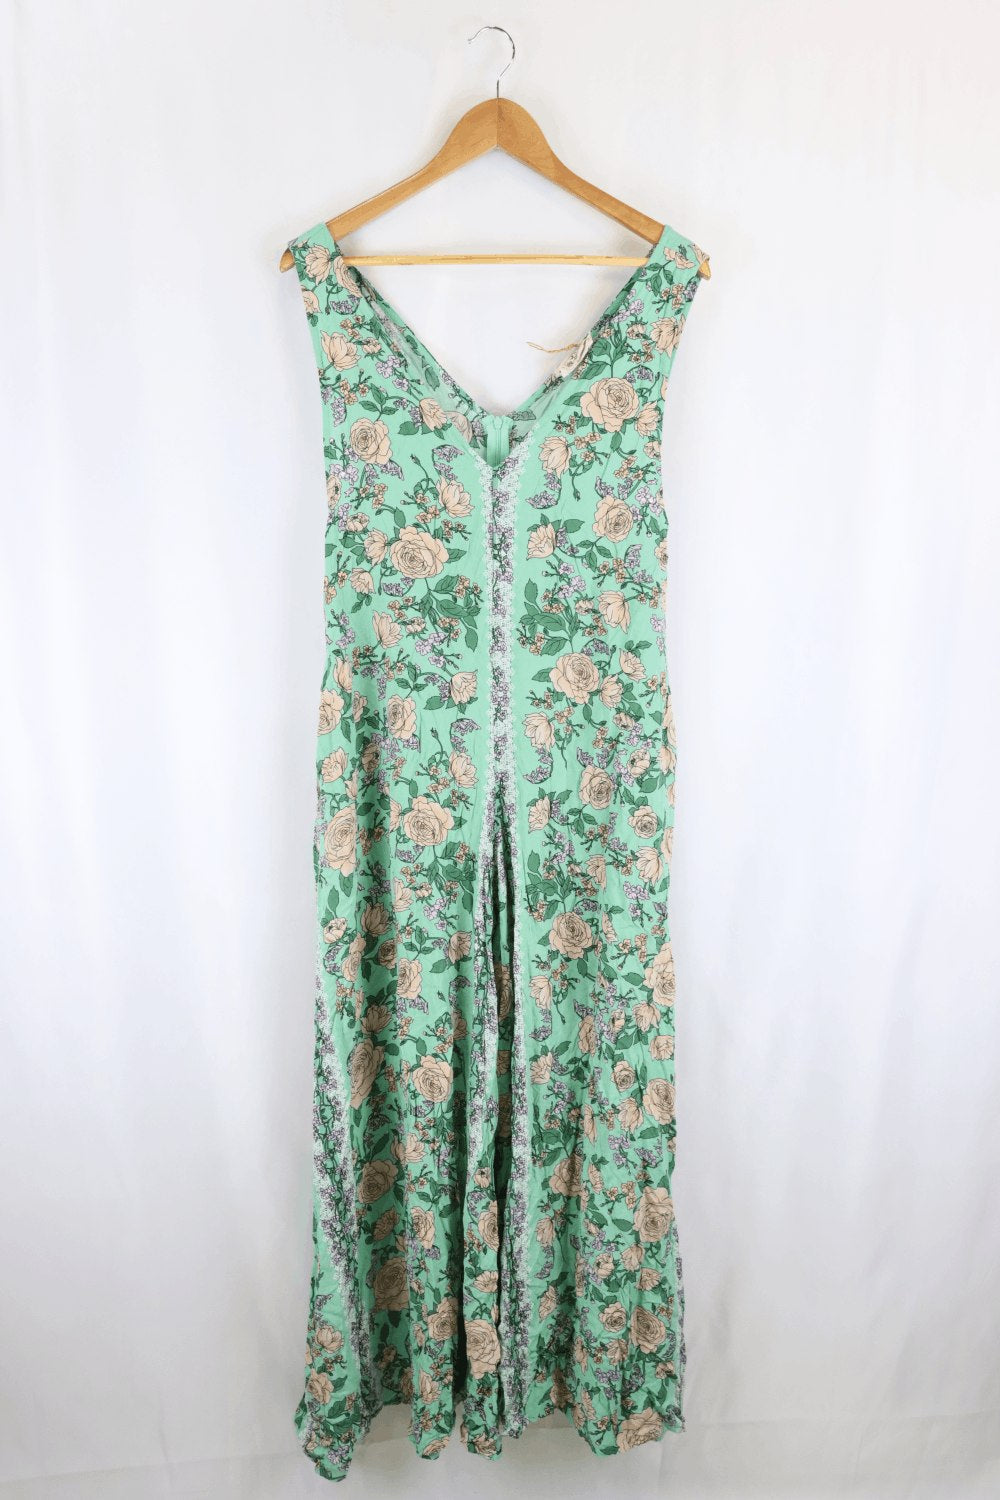 Jaase Green Floral Dress M